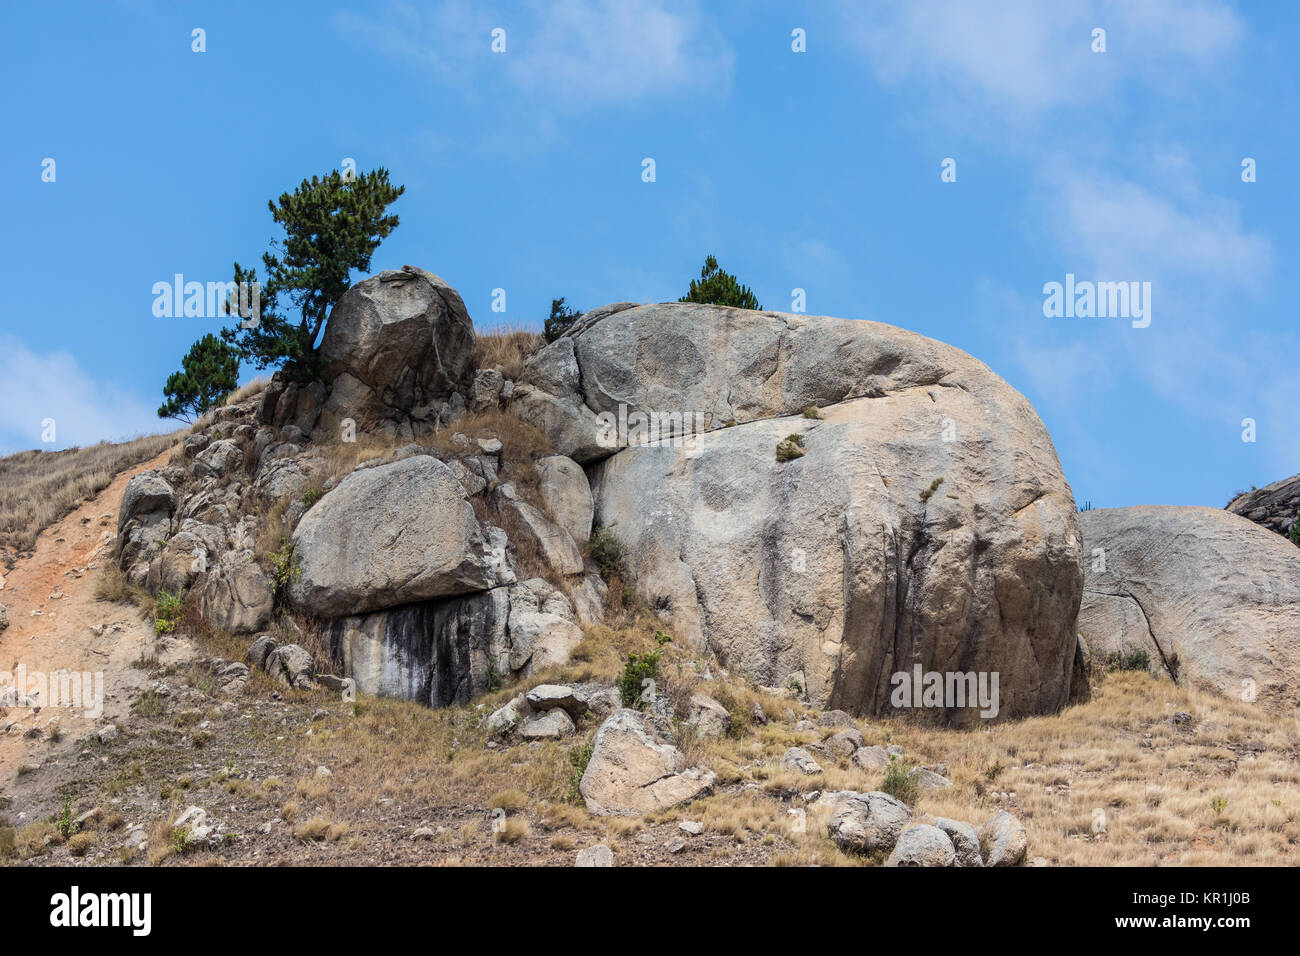 Precambrian granite outcrop. Madagascar, Africa. Stock Photo